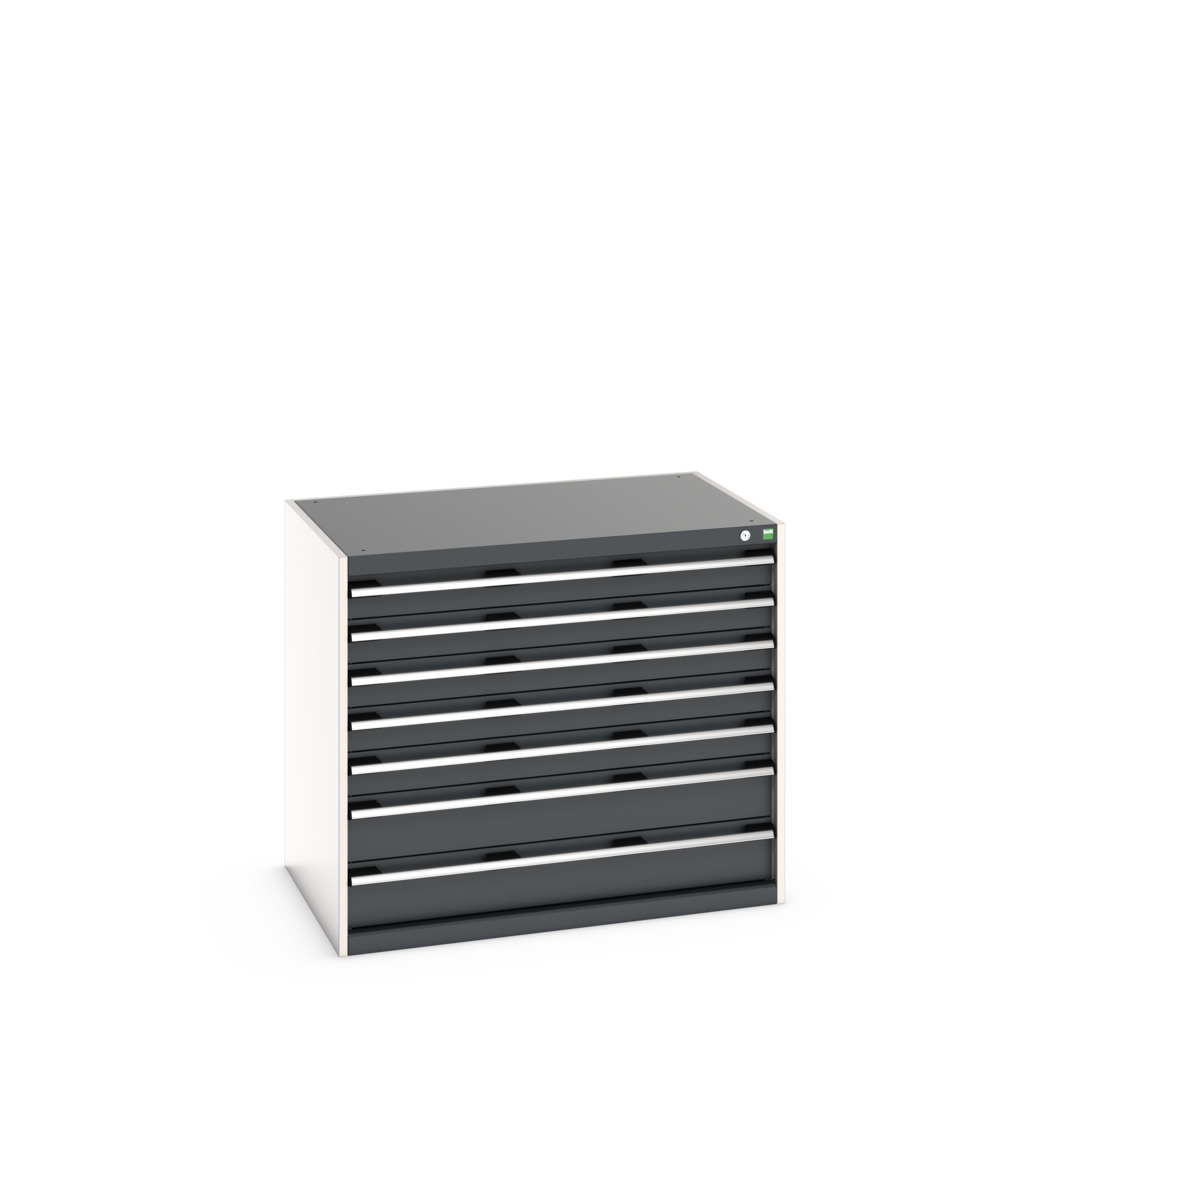 40029091.19V - cubio drawer cabinet